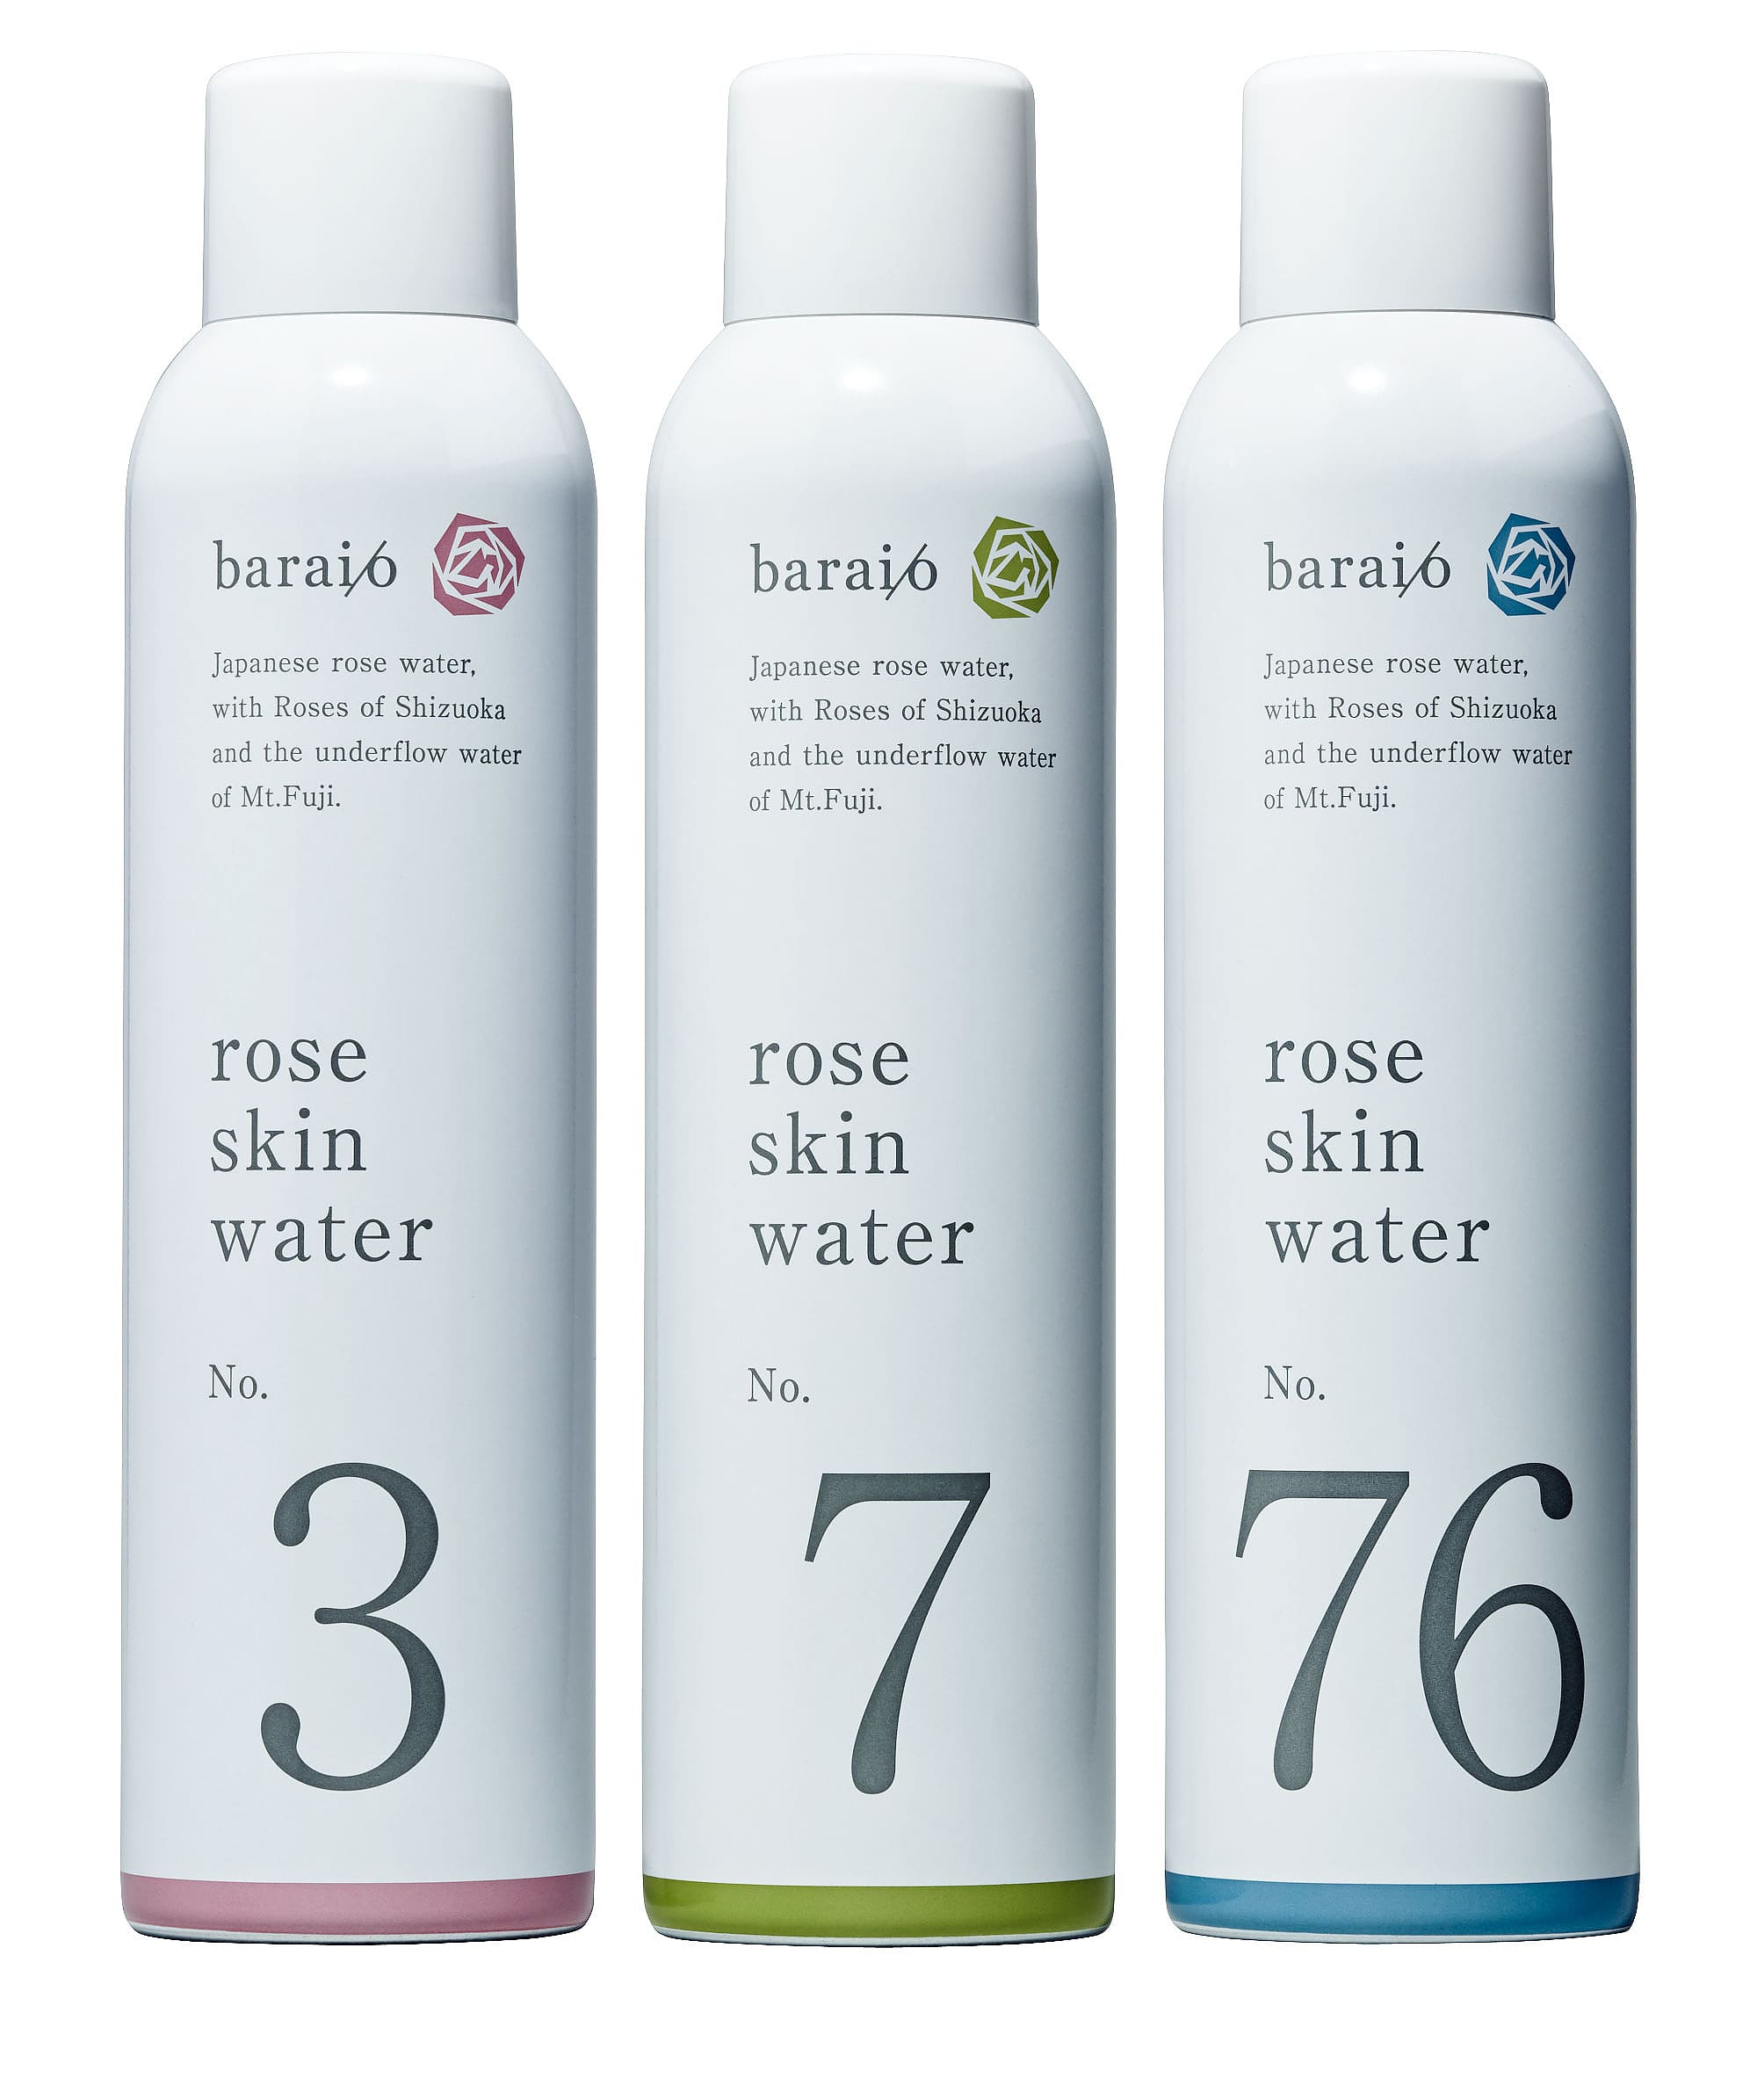 baraio玫瑰香氛面部喷雾单瓶装（3号/7号/76号三种香味可选）